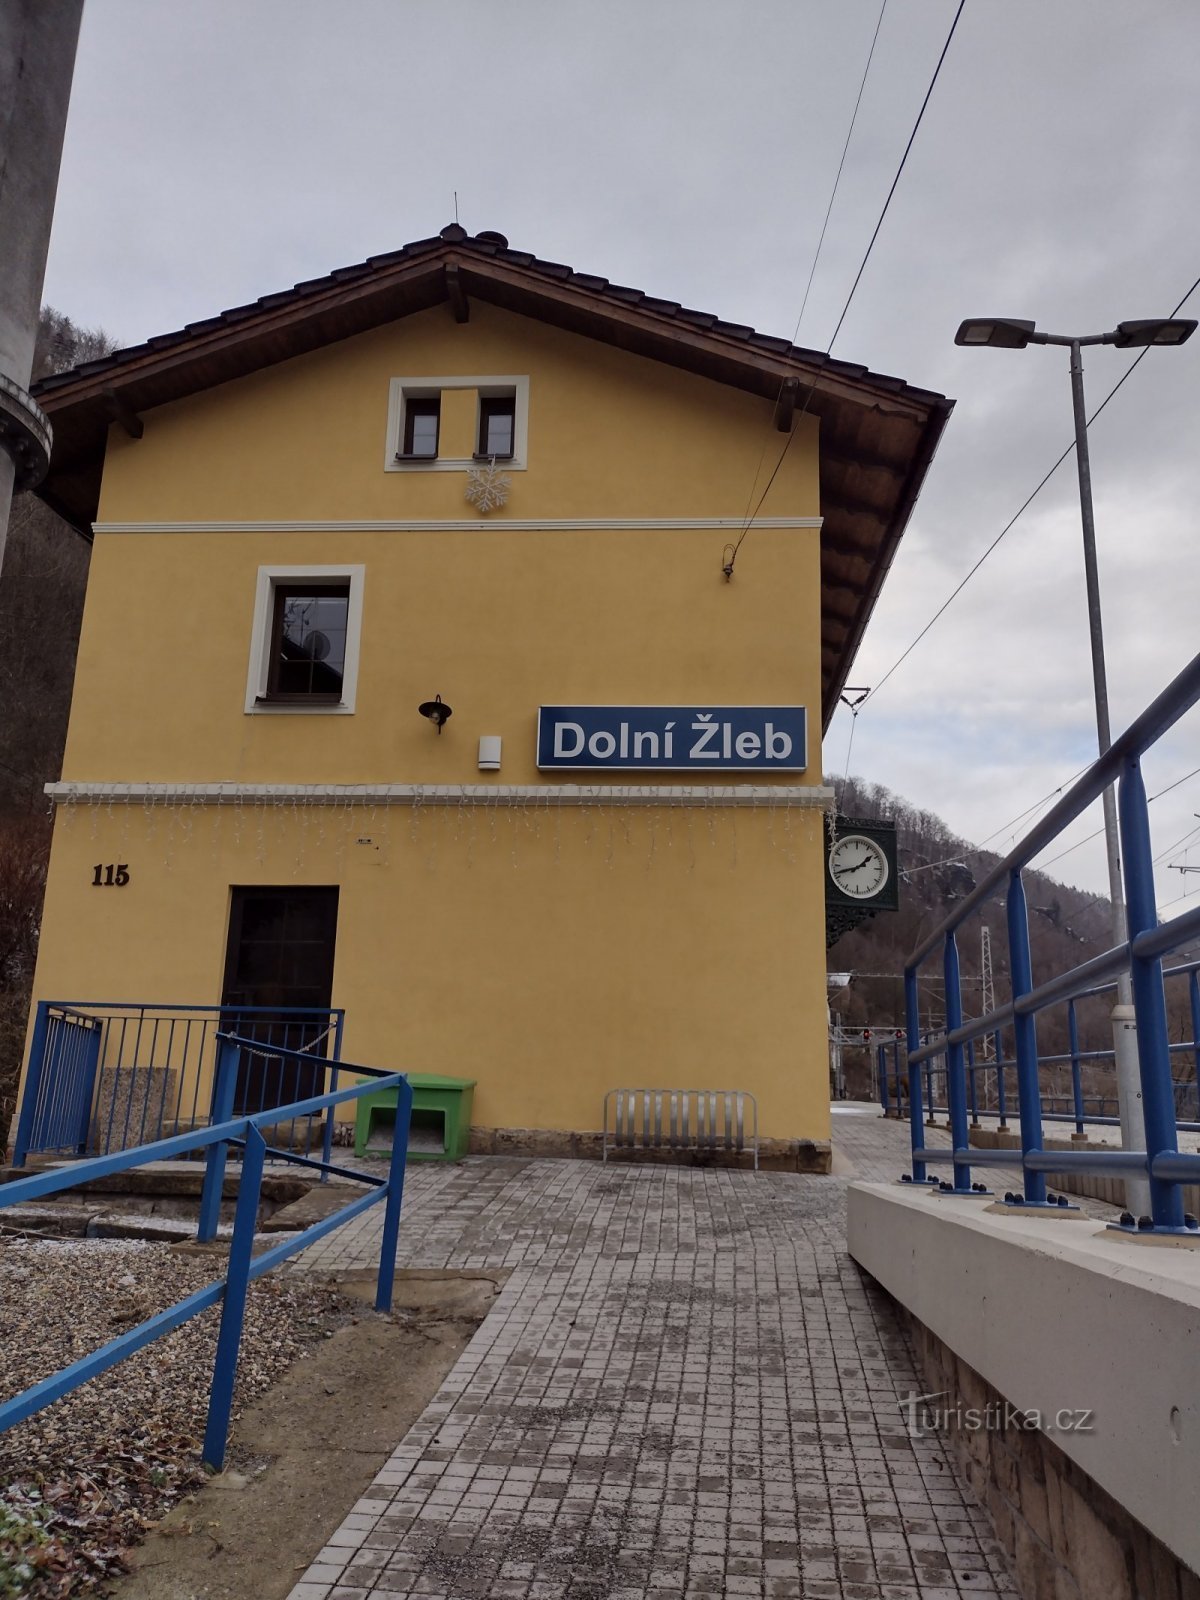 Dolní Zleb - Großer Zschirstein - Puerta Checa - U Buku - Dolní Zleb